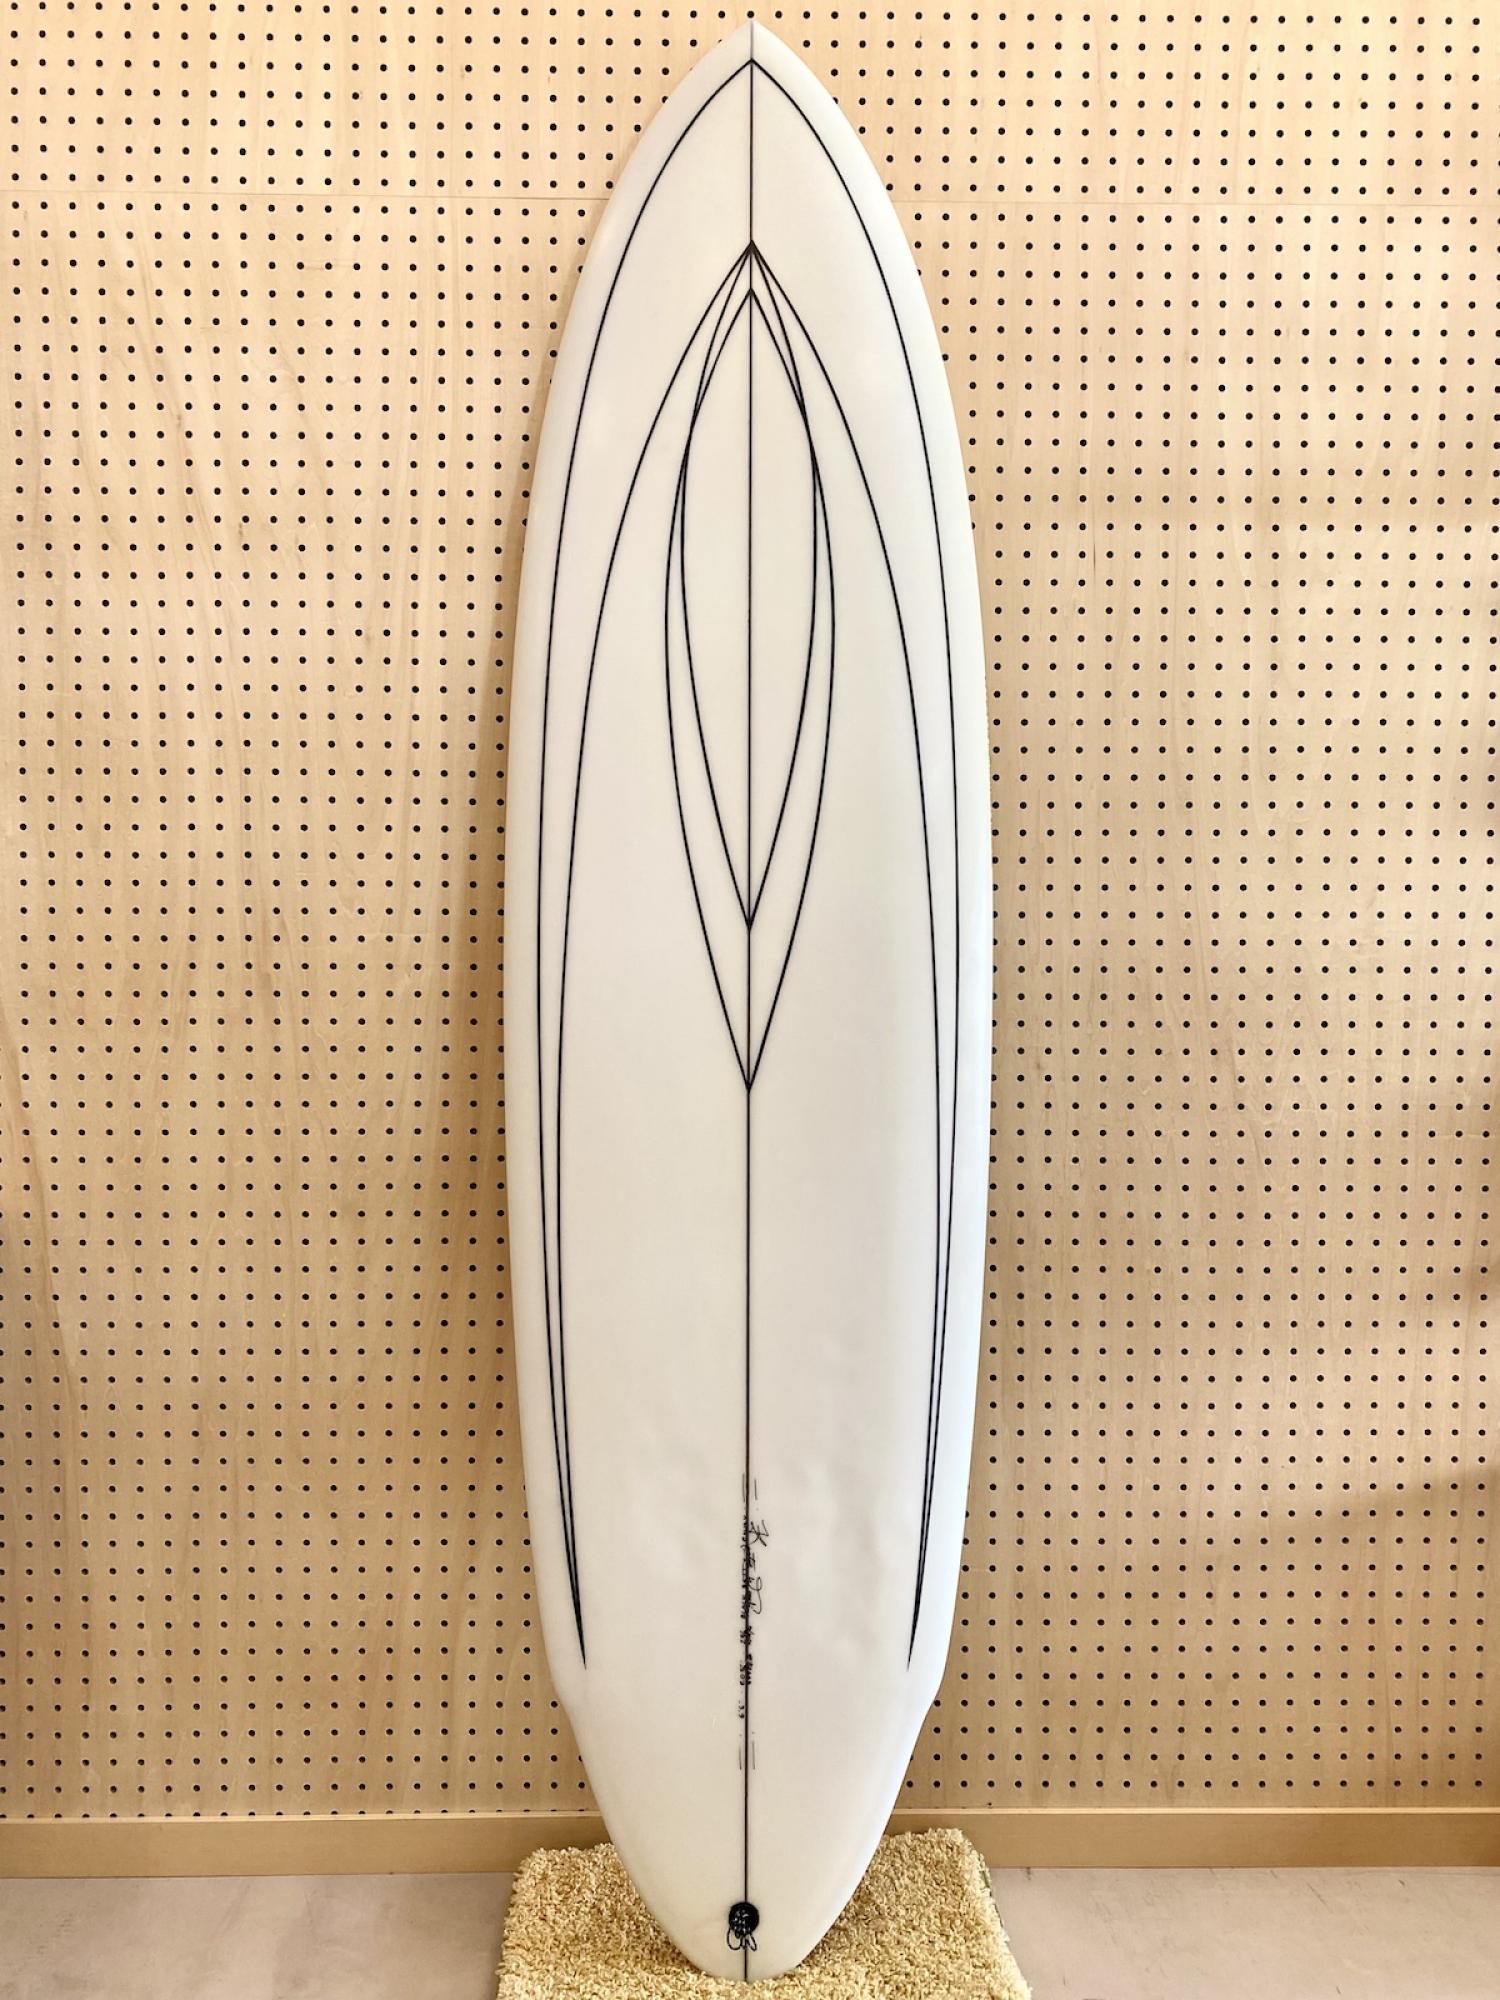 The Black Betty model 6.6 WOODIN SURFBOARDS